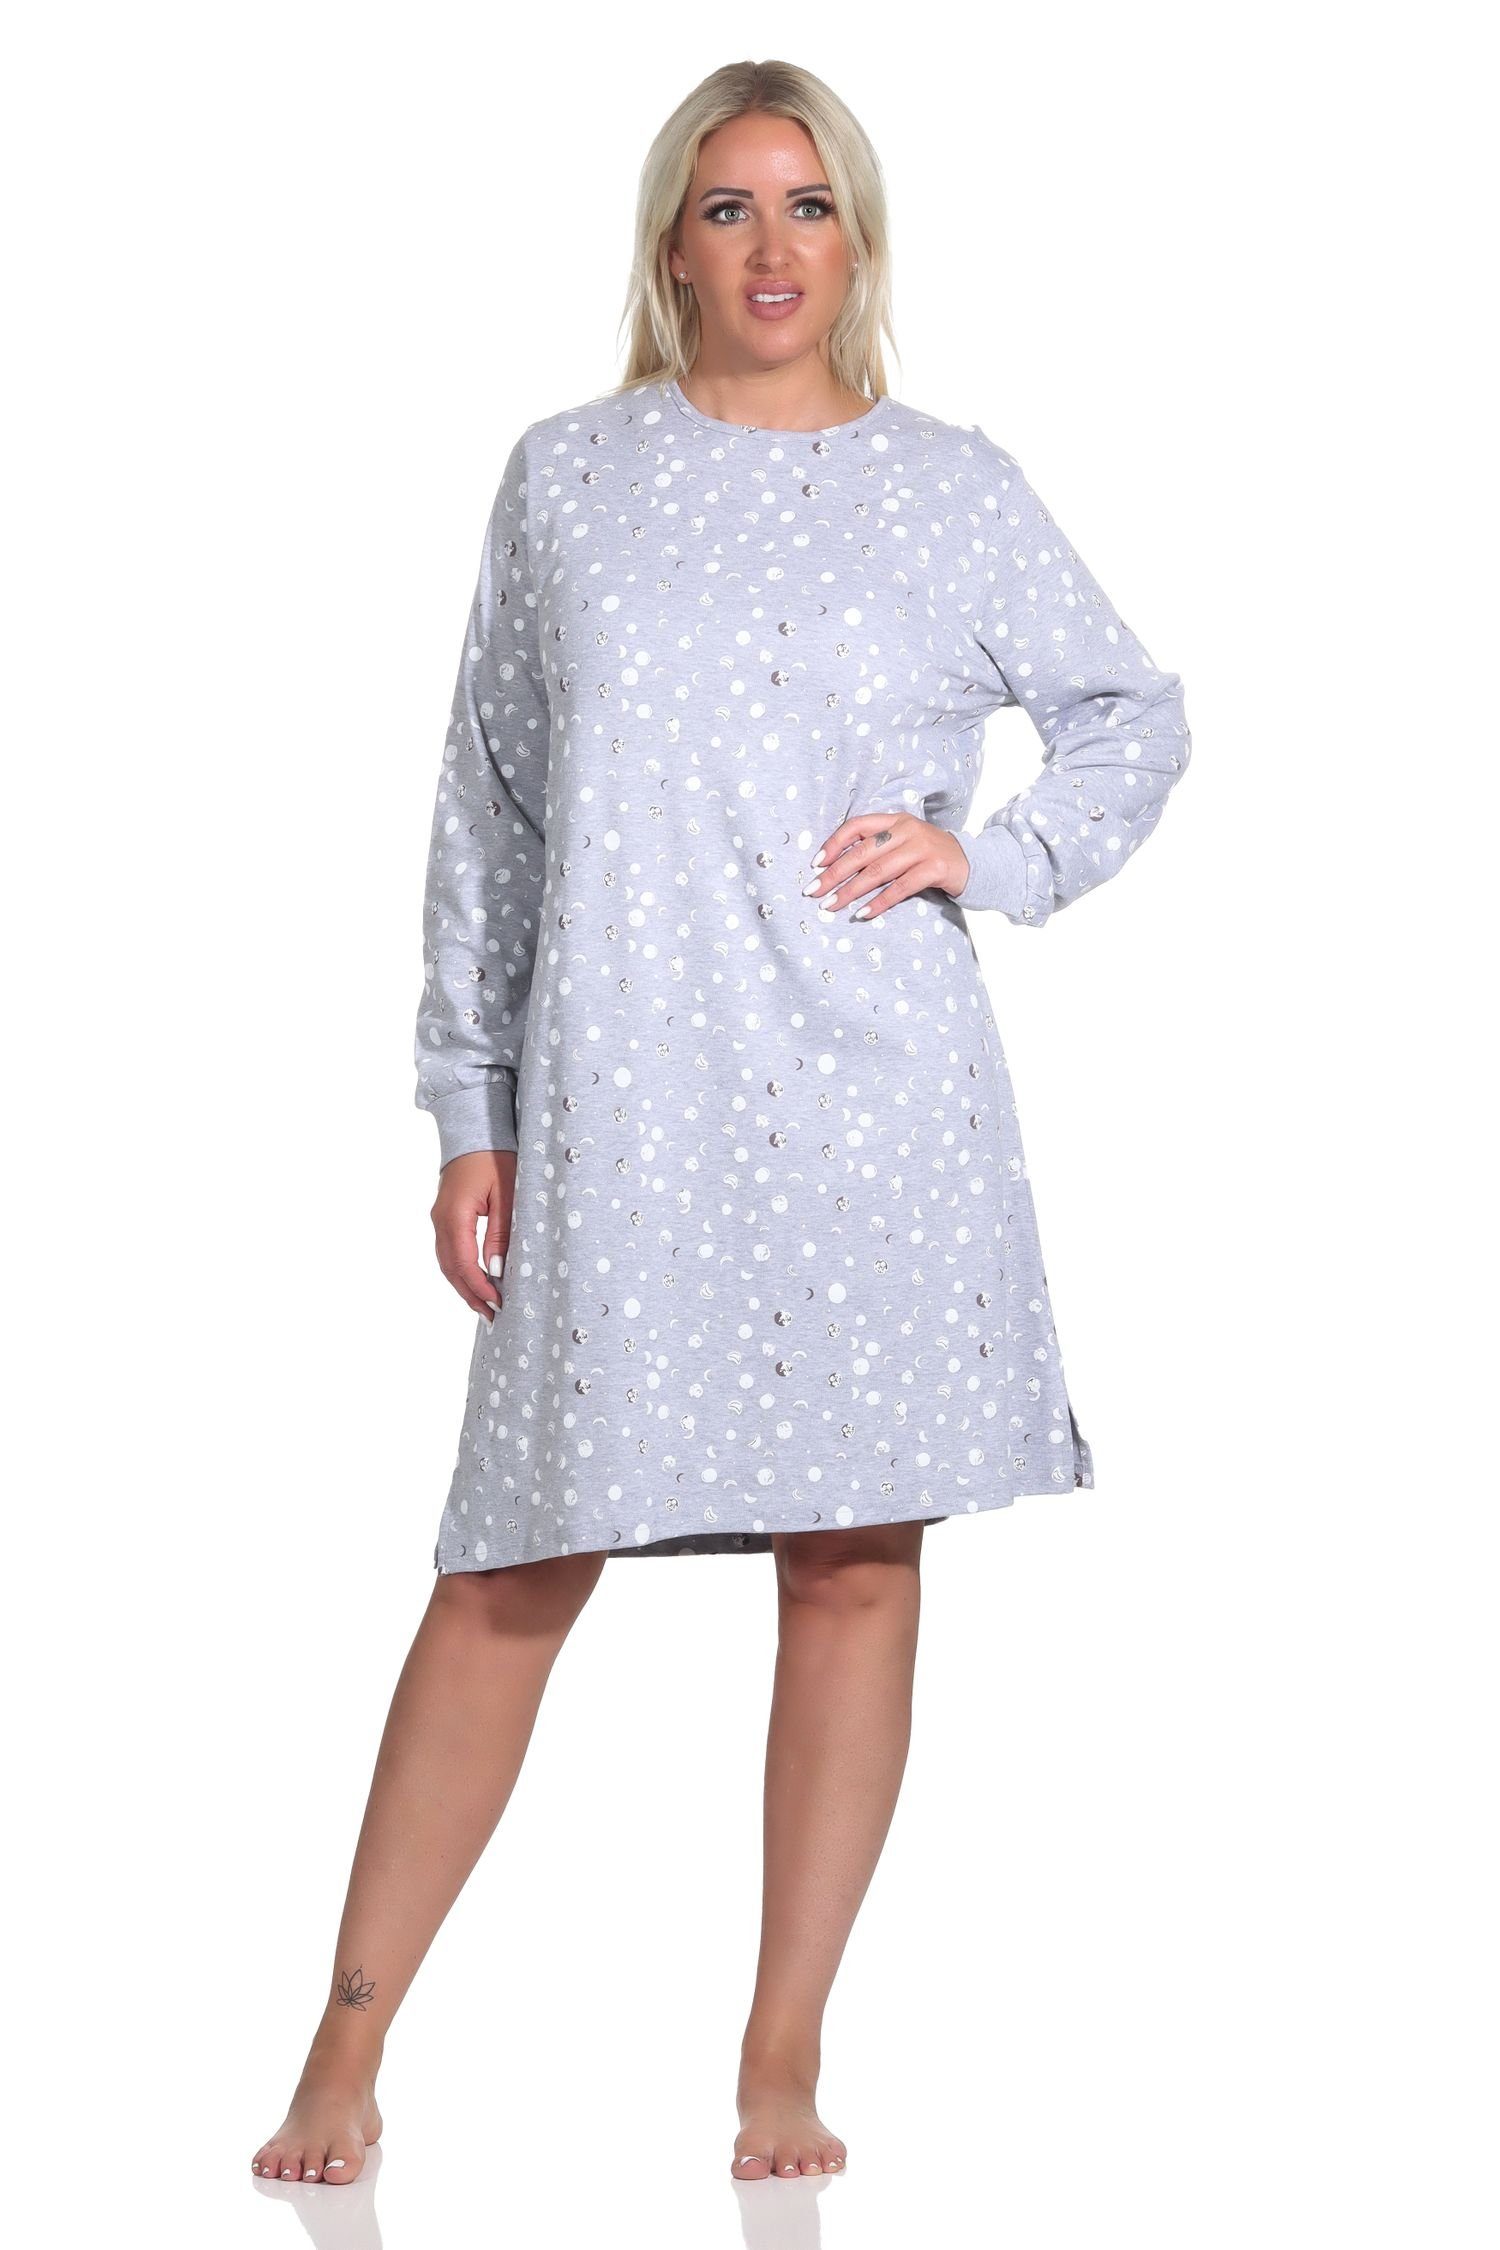 Normann Nachthemd Damen langarm Nachthemd mit Bündchen in Kuschel Interlock Qualität grau-melange